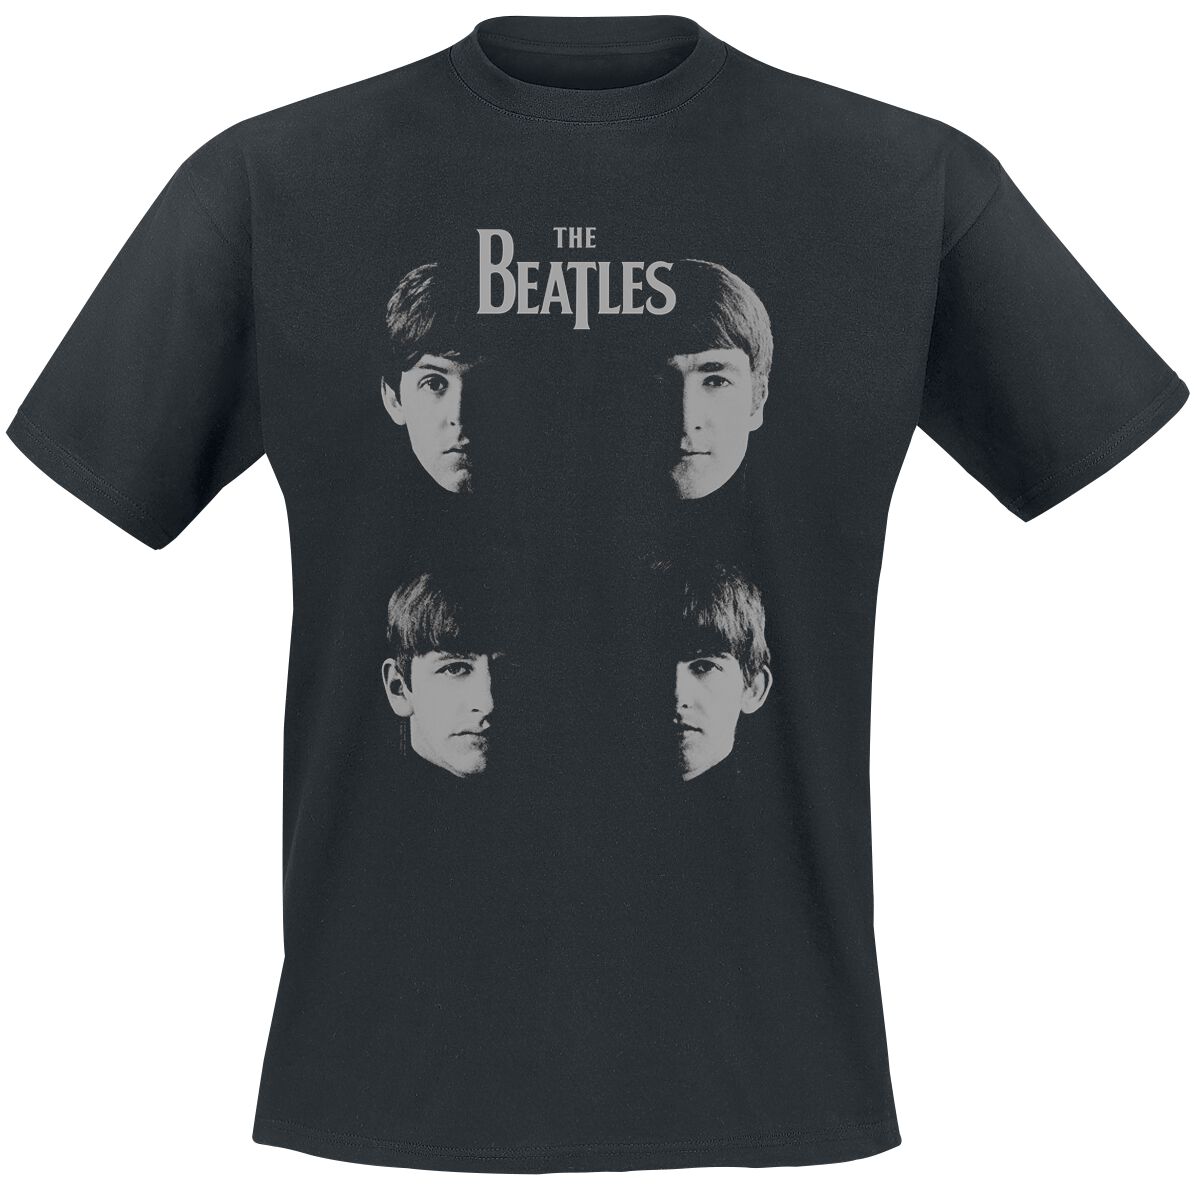 The Beatles T-Shirt - Shadow Faces - S bis 3XL - für Männer - Größe XL - schwarz  - Lizenziertes Merchandise!